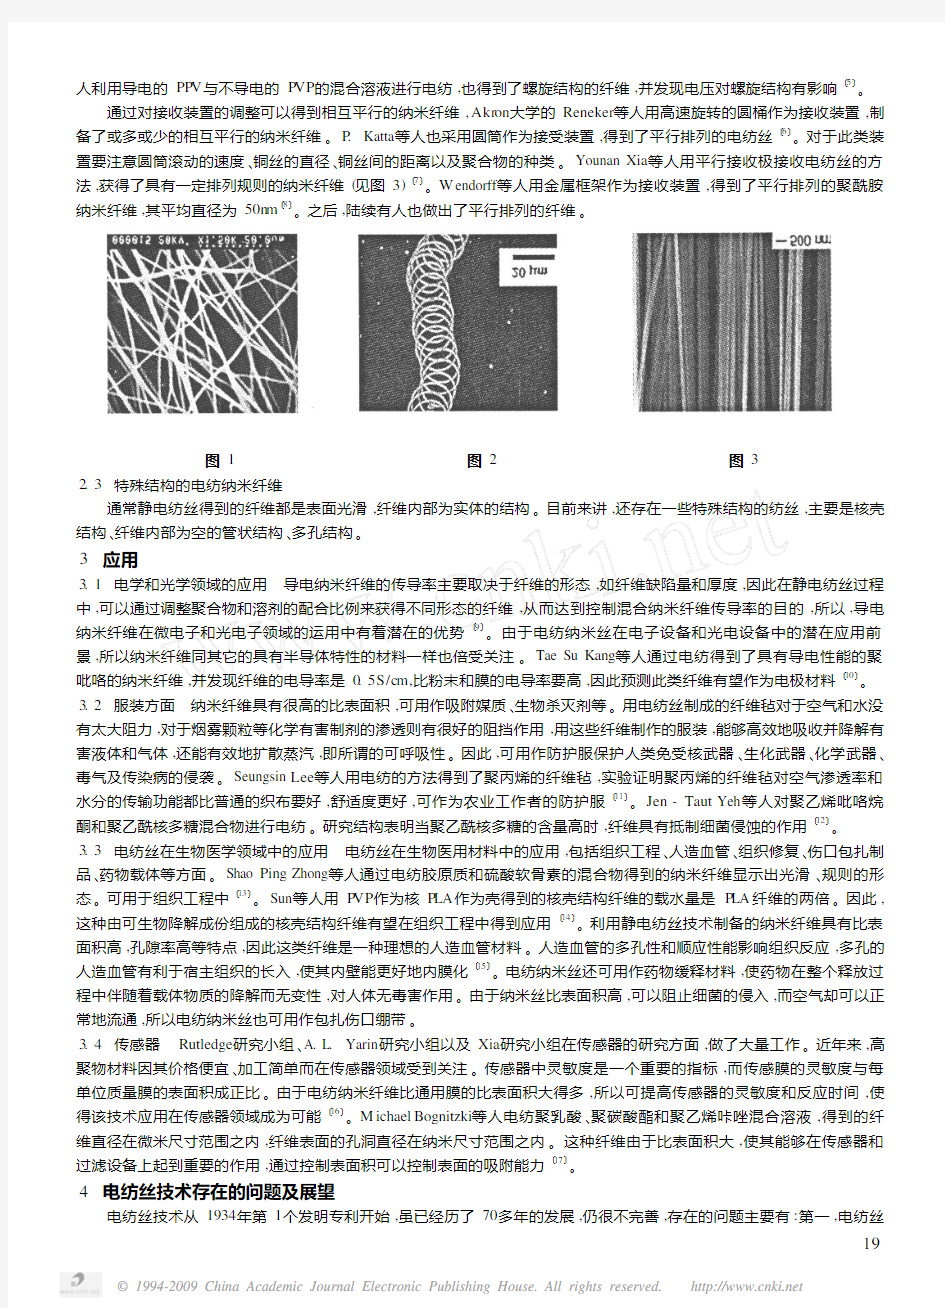 静电纺丝技术研究及纳米纤维的应用前景